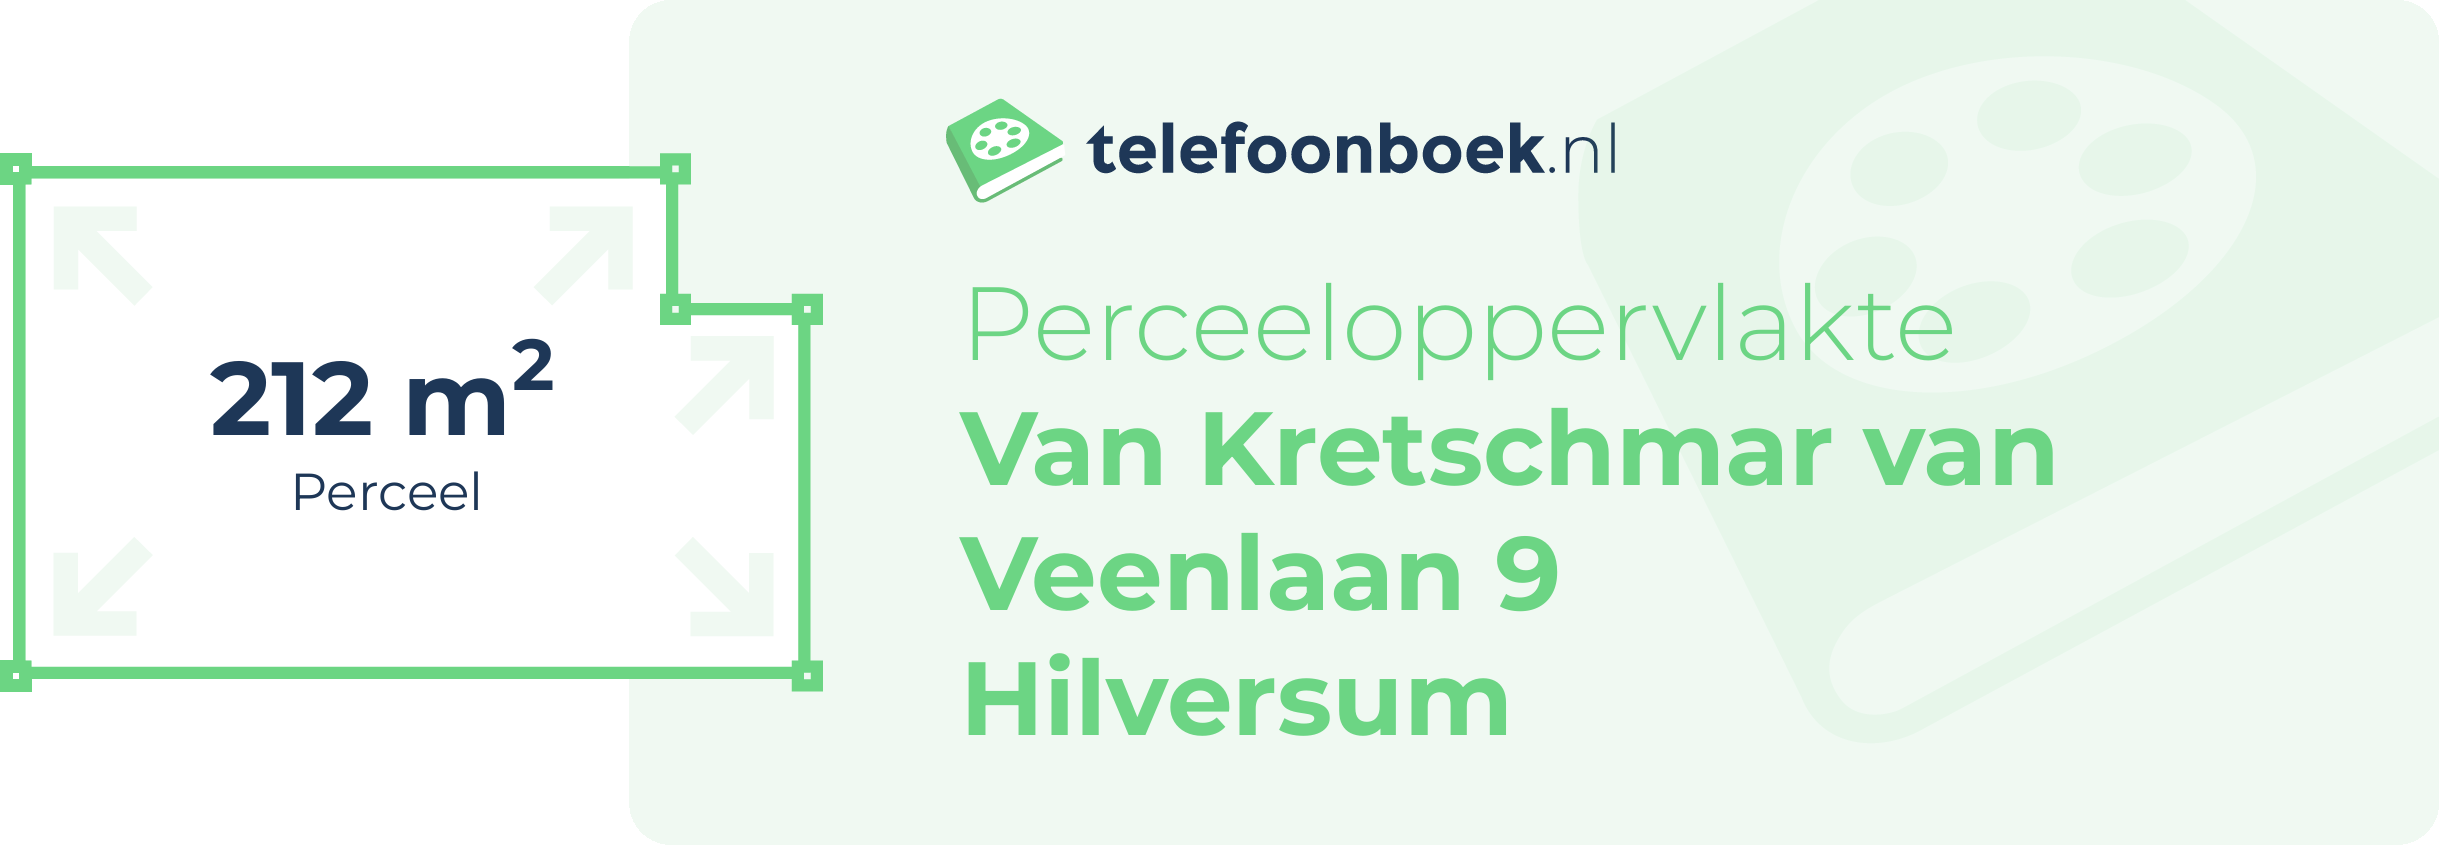 Perceeloppervlakte Van Kretschmar Van Veenlaan 9 Hilversum